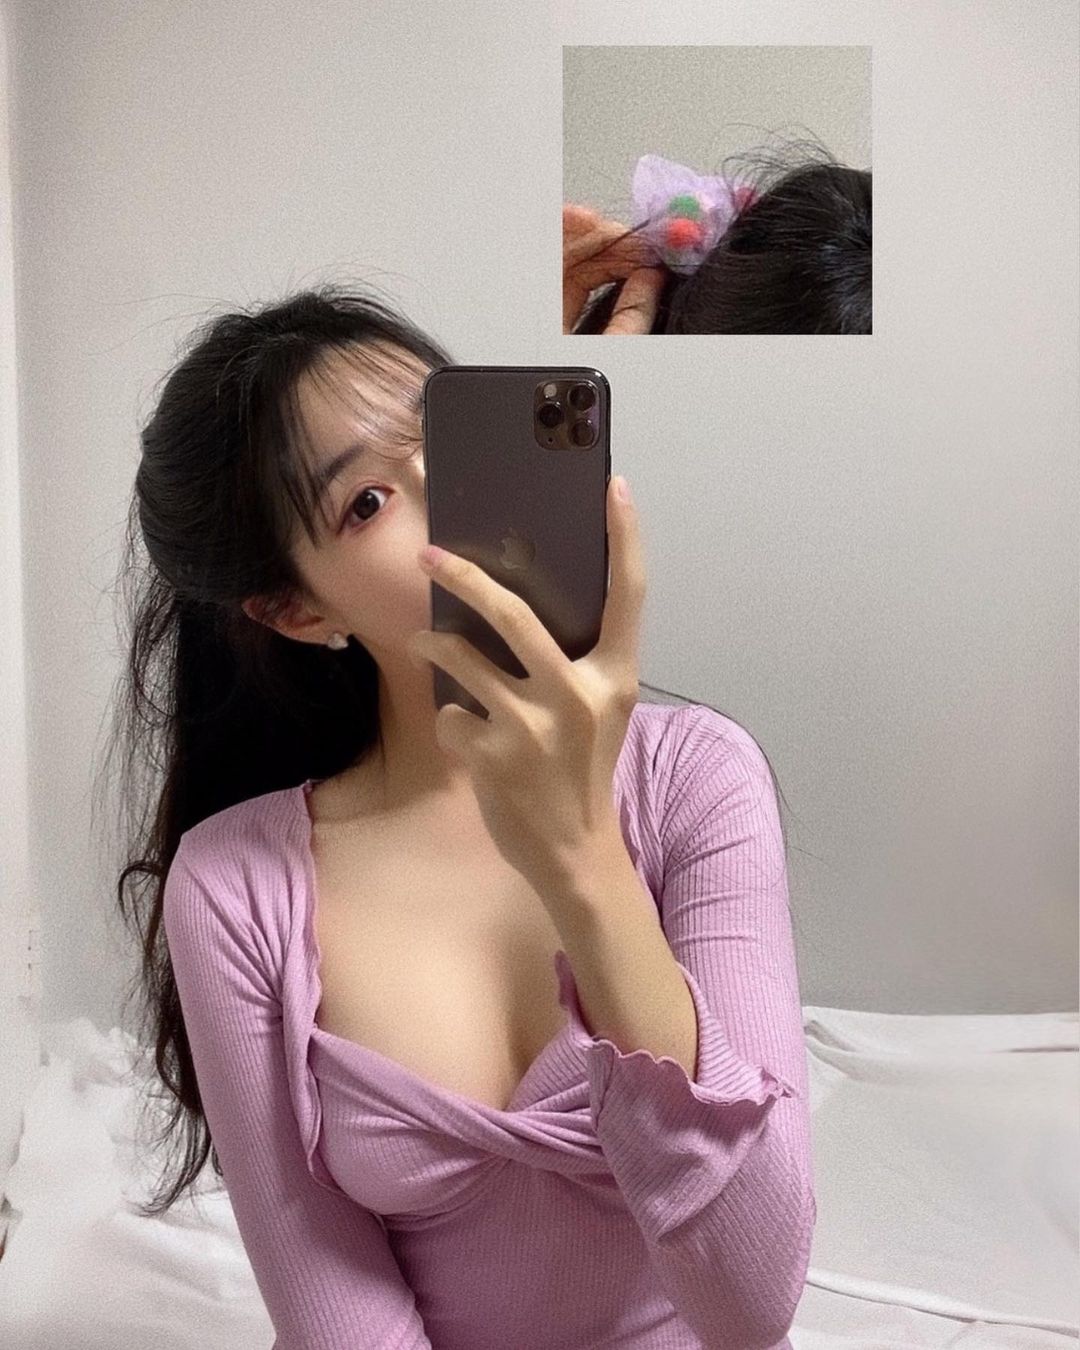 Chẳng cần lộ mặt, hot girl tạp hóa xứ Hàn vẫn "gây mê" người nhìn bằng body trời ban - 3